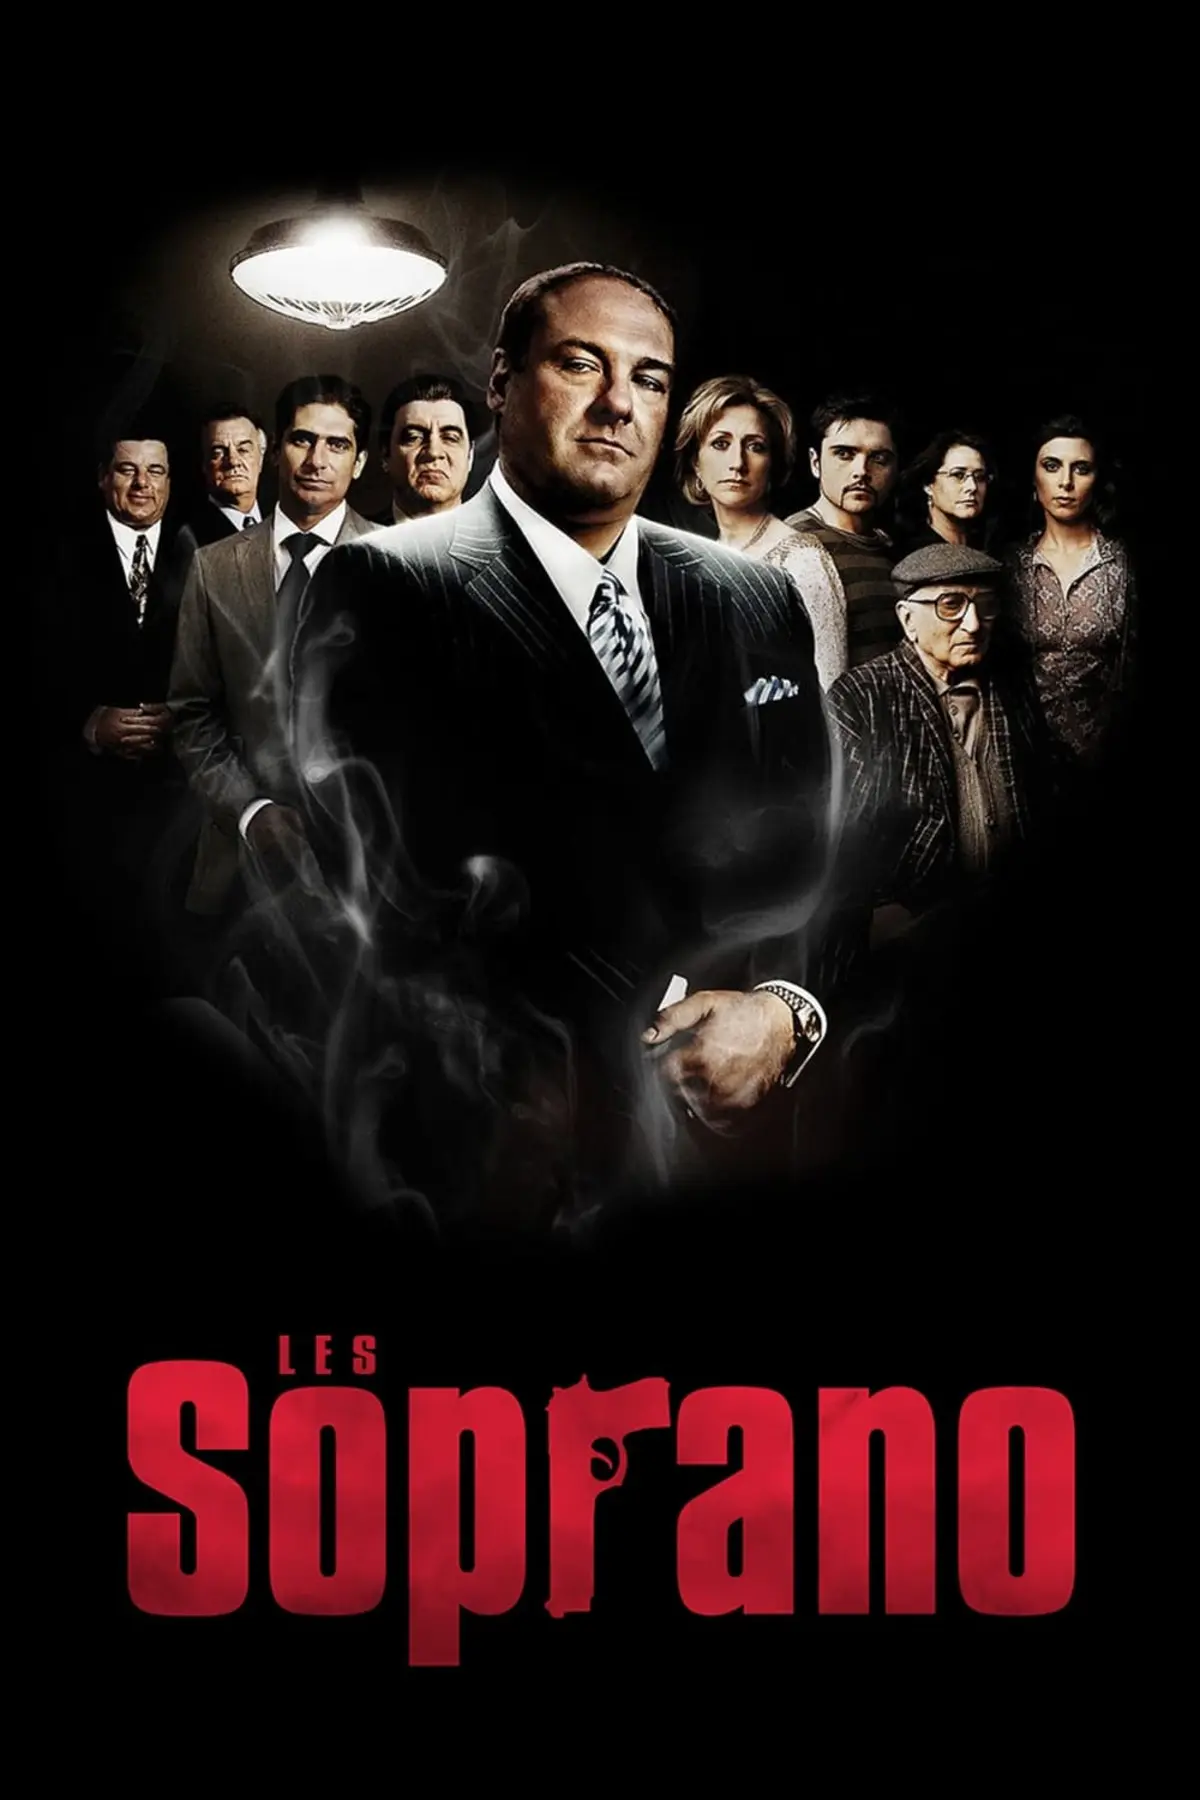 Les Soprano S05E01 Deux Tony sinon rien